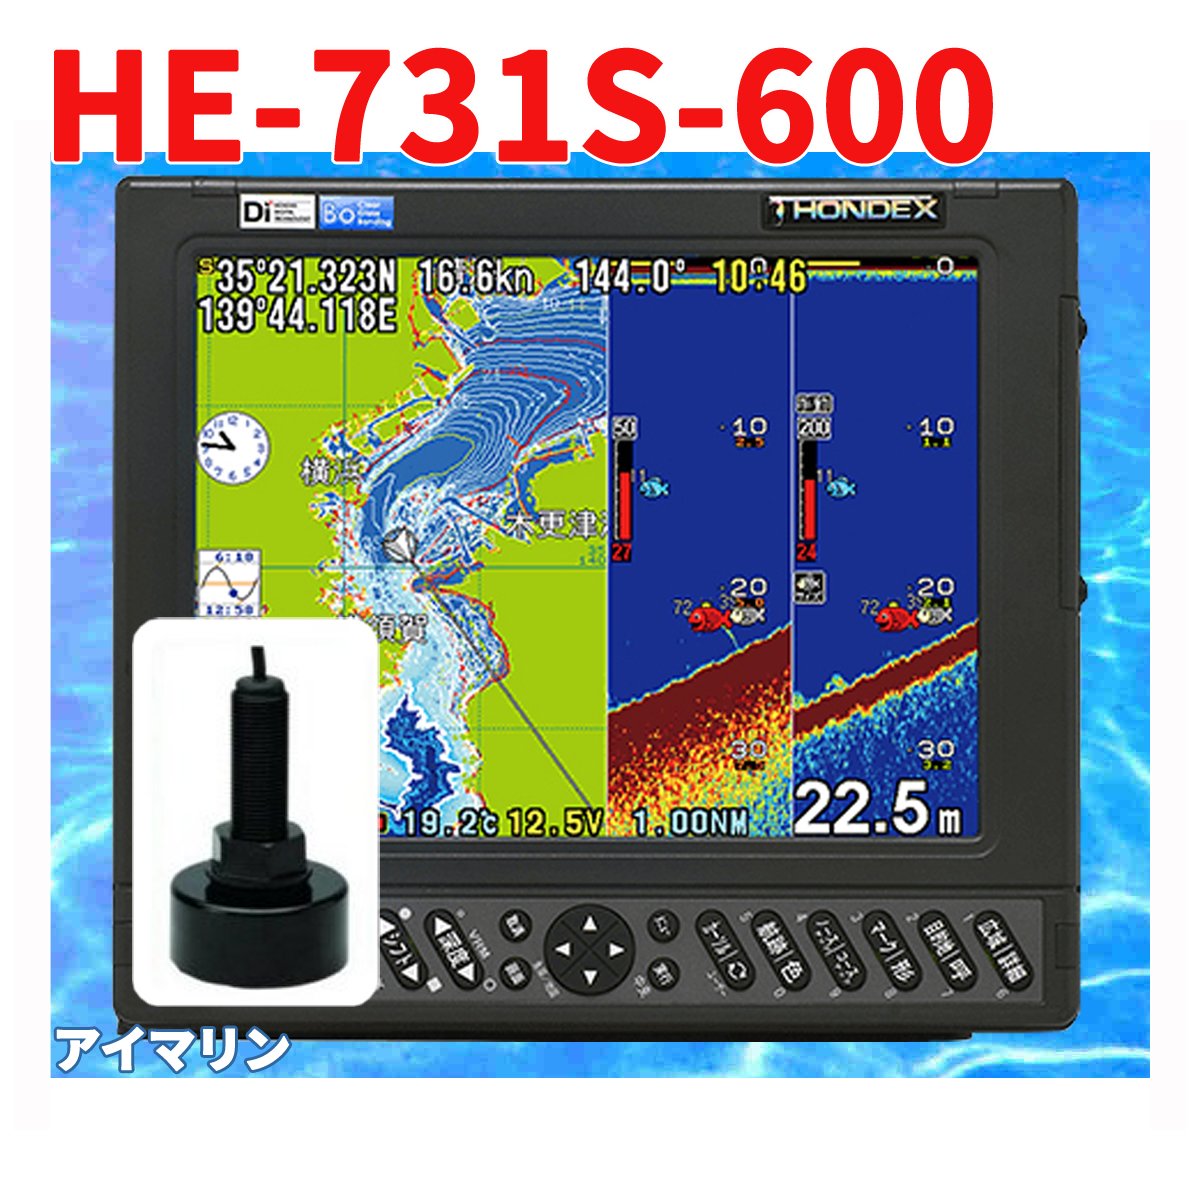 5/13 在庫あり 魚群探知機 HONDEX HE-731S 600w TD28 振動子付き GPS 魚探 アンテナ内蔵 ホンデックス